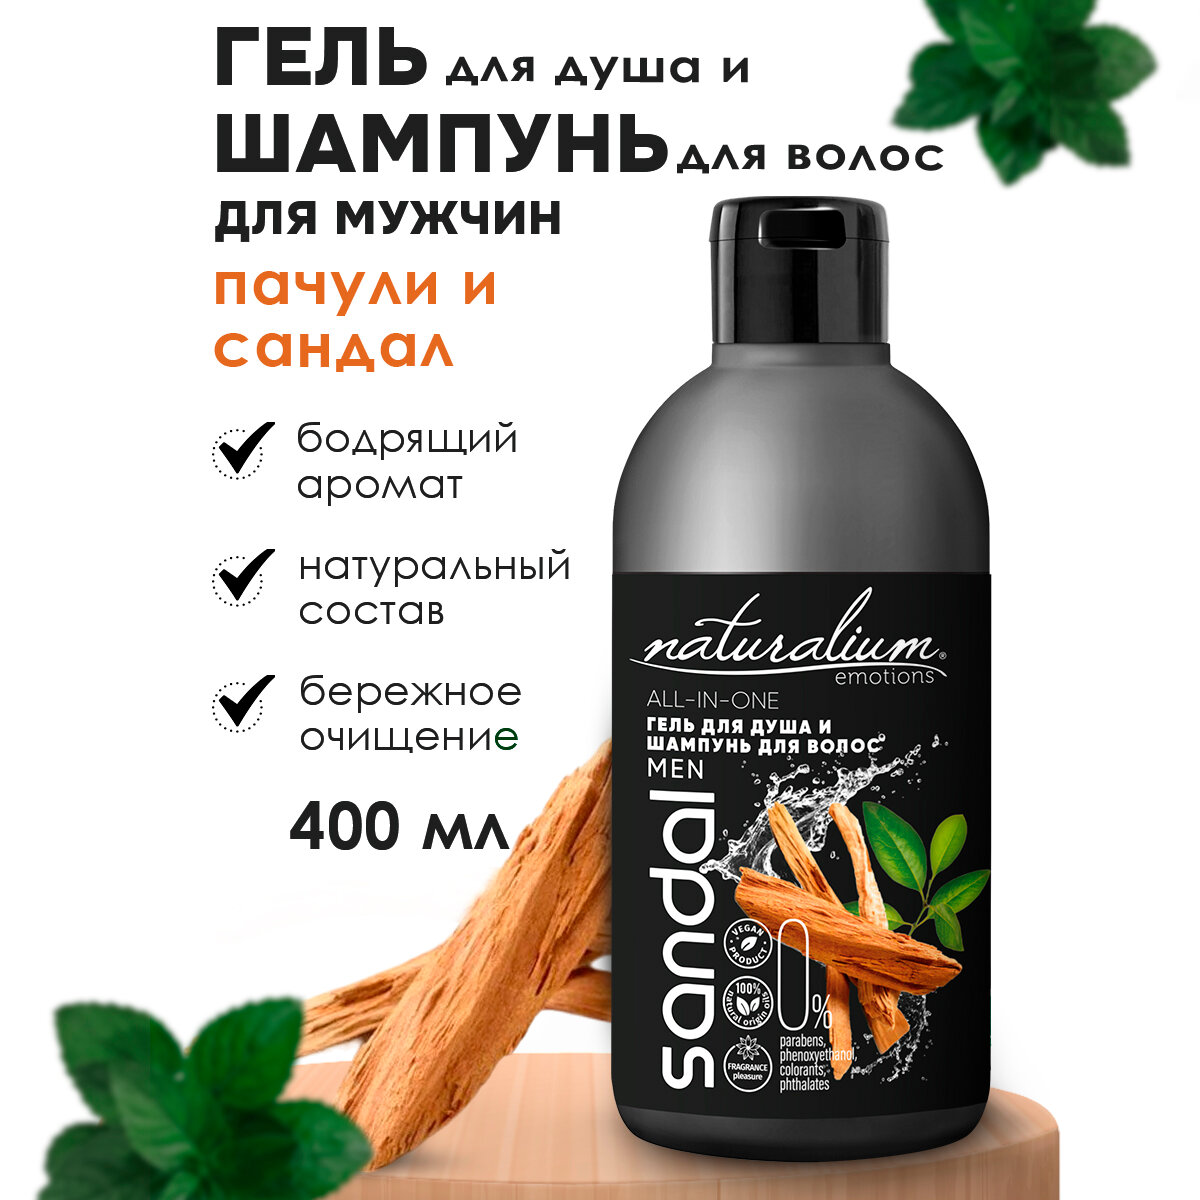 Naturalium Emotions Гель для душа и шампунь для волос мужской "Сандаловое дерево и Пачули"/веган, 400 мл